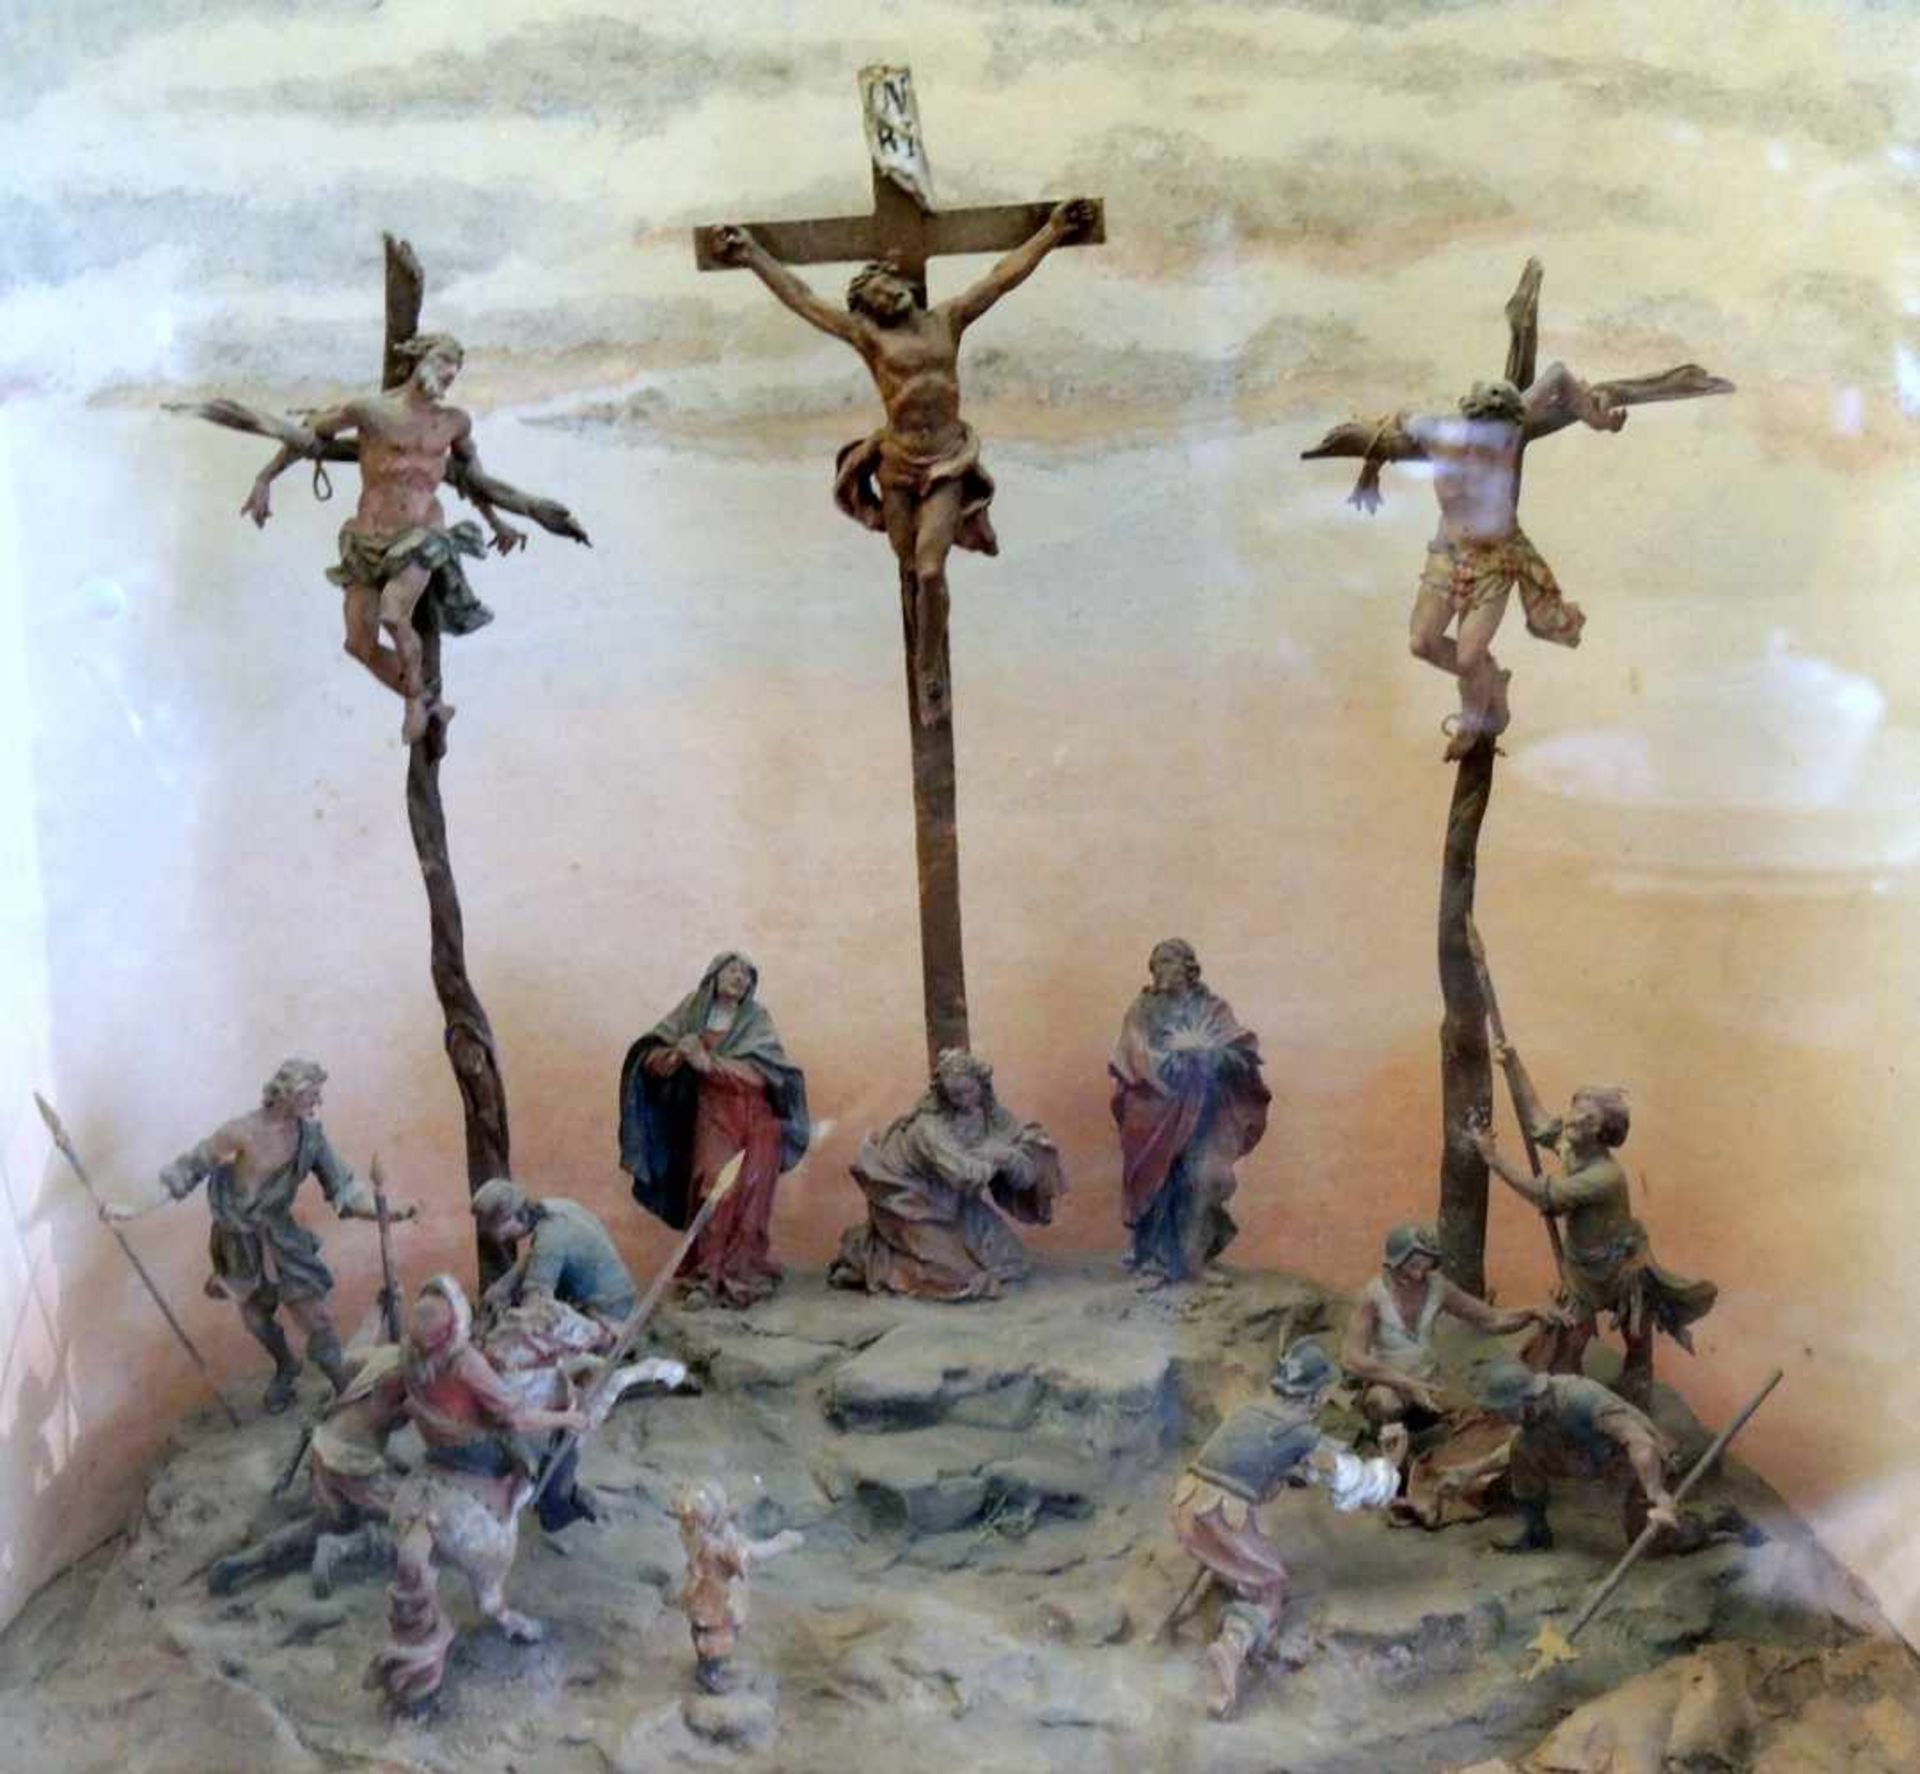 Schaukasten - Biblische DarstellungVerglaster Schaukasten mit Darstellung der Kreuzigung Christi.